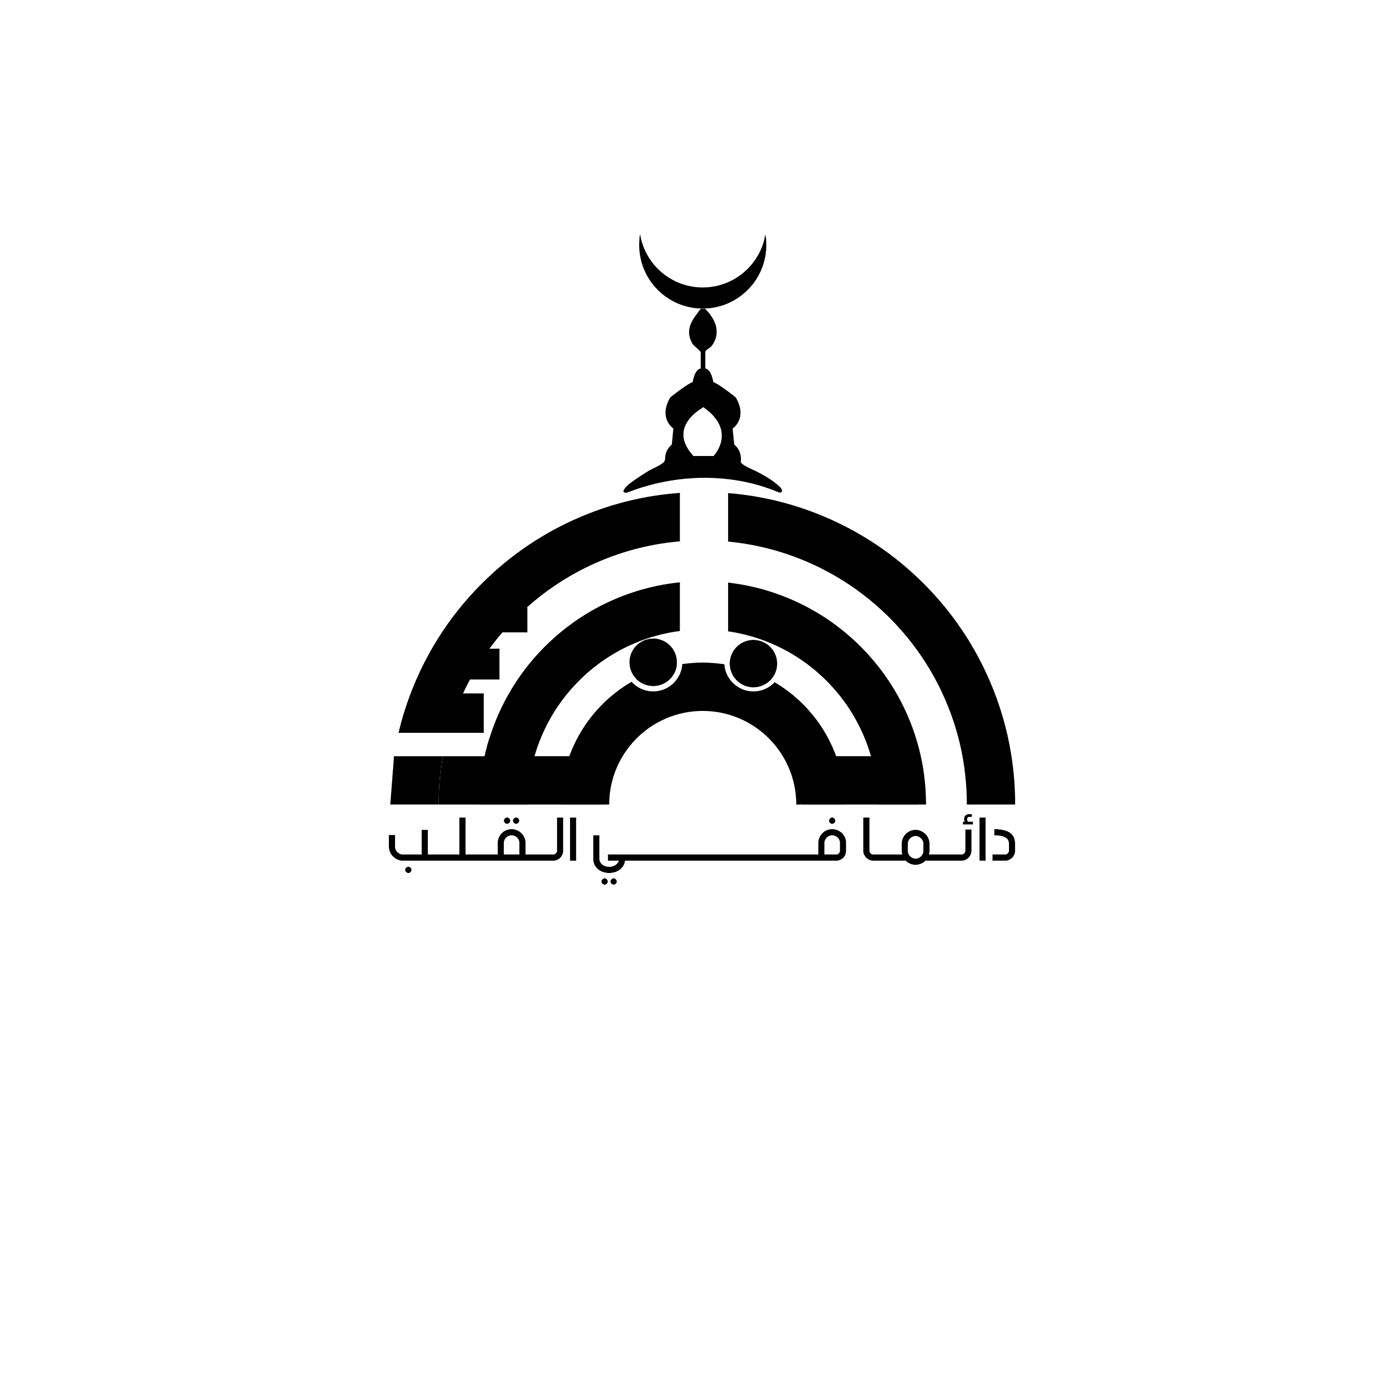 alquds Arabic logo logo logo folio social media القدس القدس دائما في القلب المسجد الأقصي